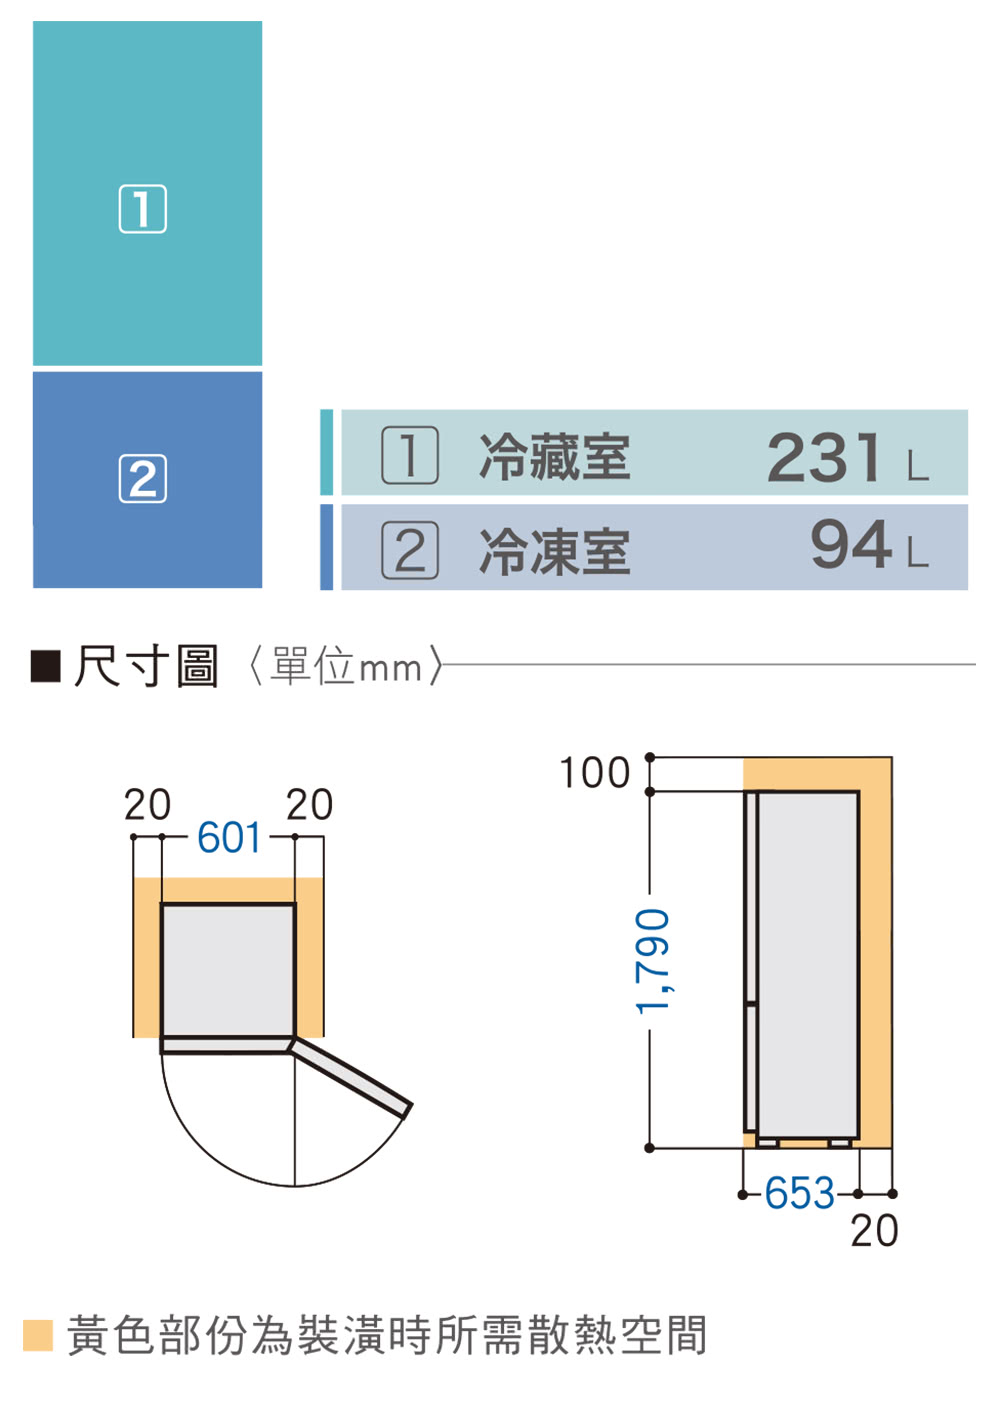 1尺寸圖單位mm 1 冷藏室 2 冷凍室 黃色部份為裝潢時所需散熱空間 